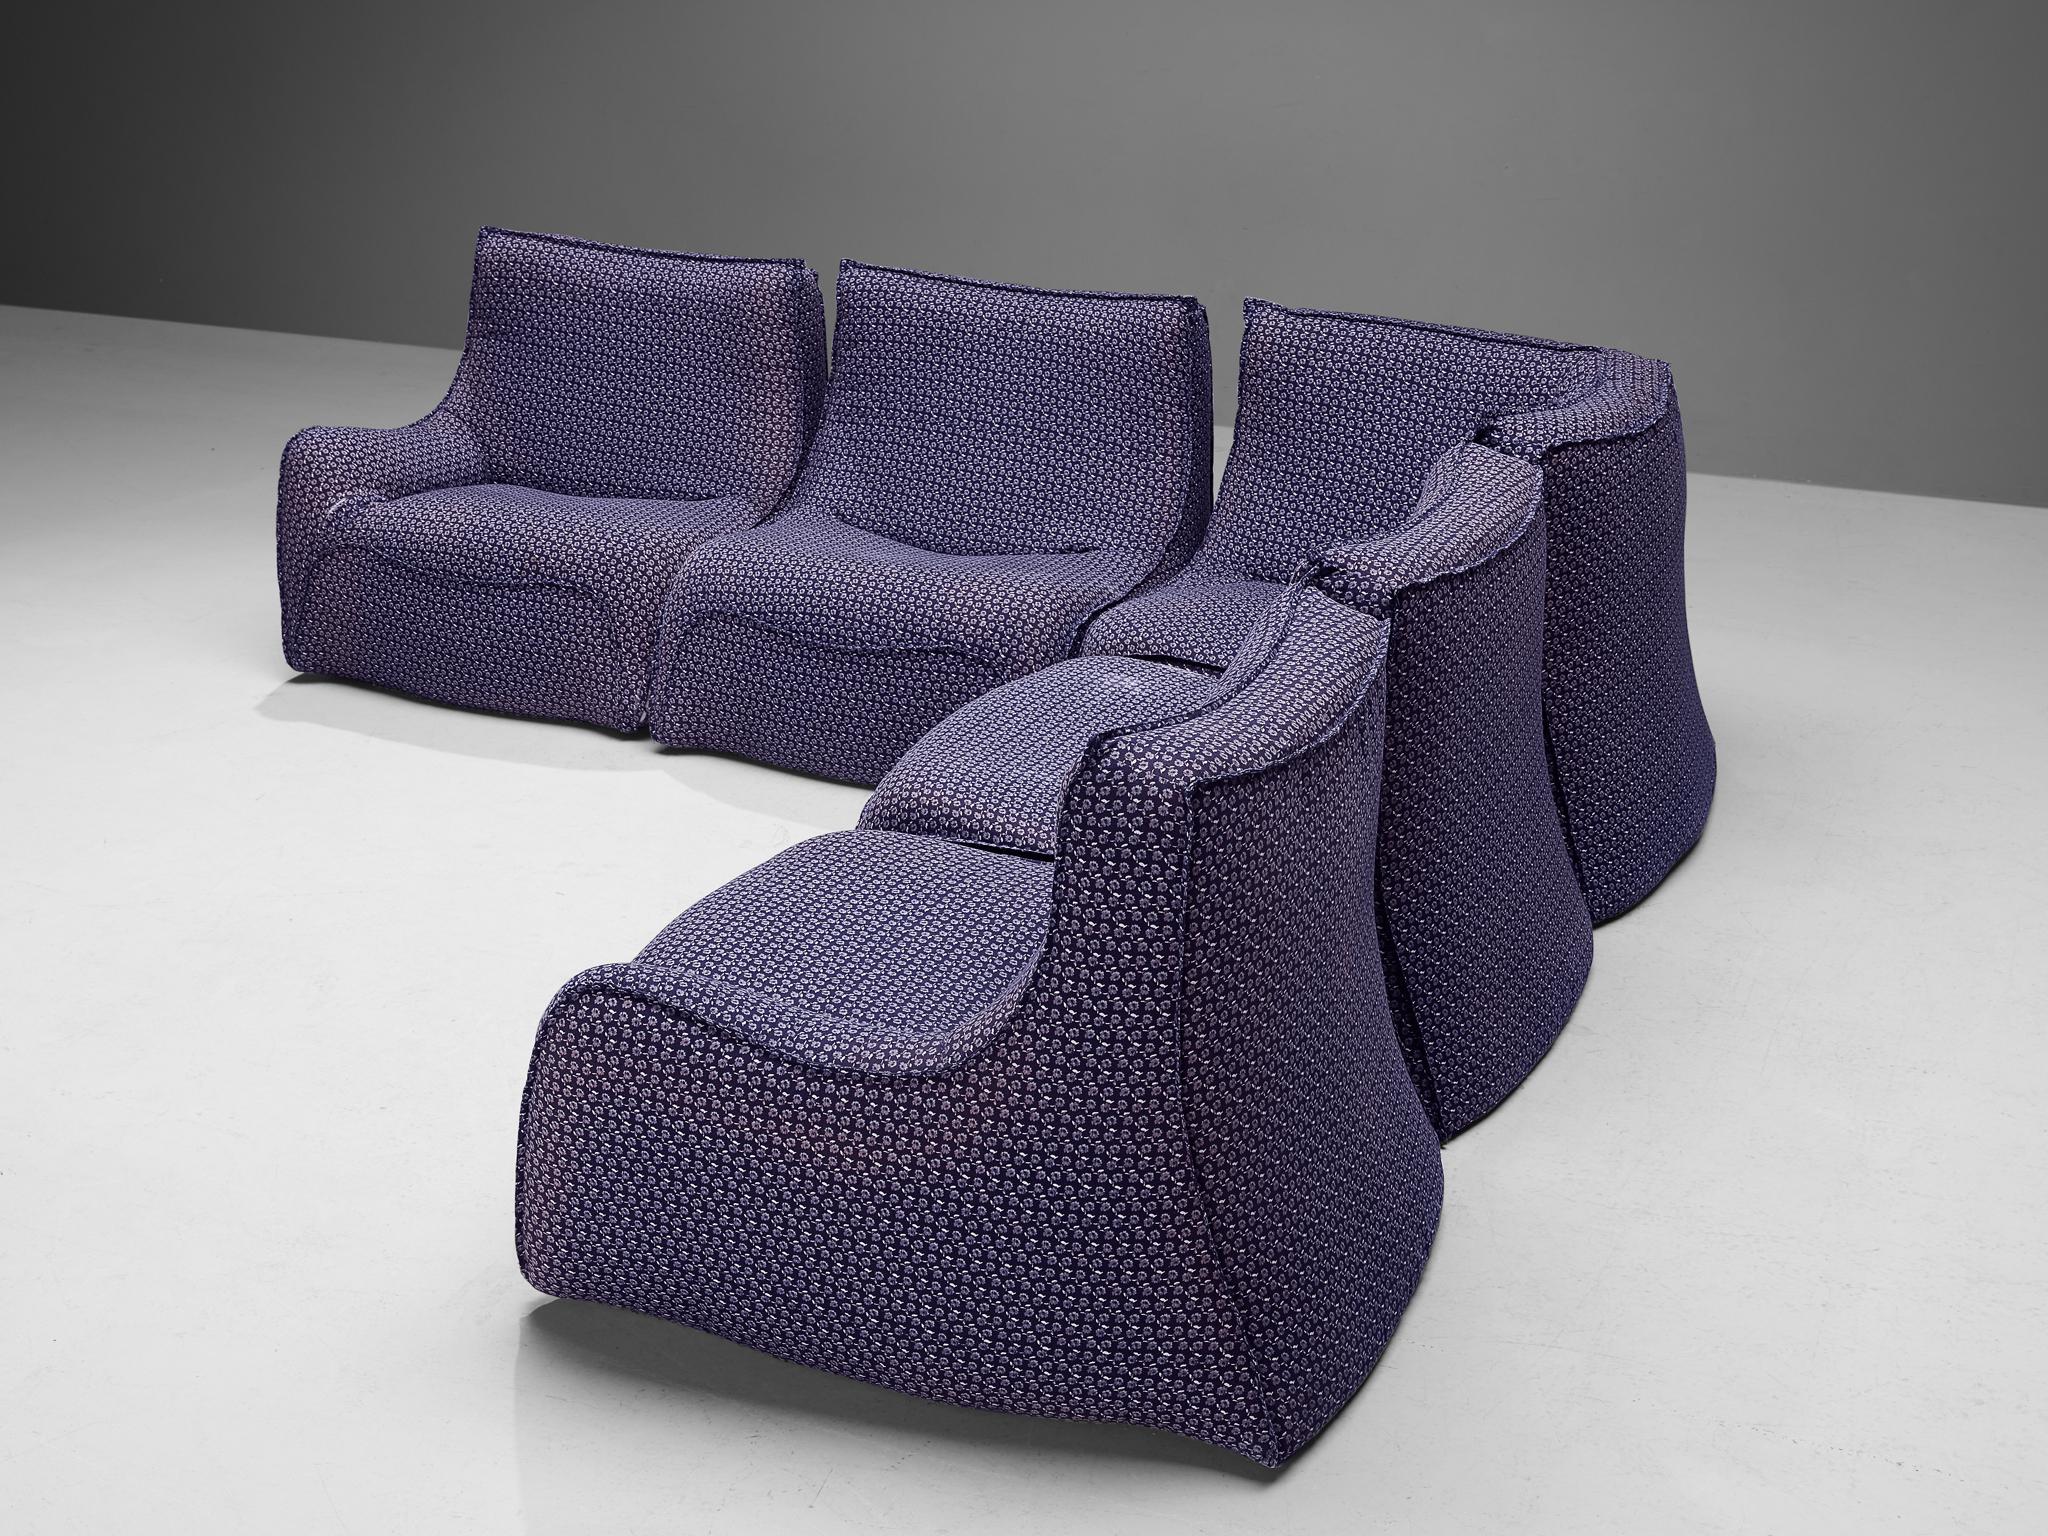 Rare Bernard Govin for Ligne Roset Sectional Sofa in Purple Upholstery For Sale 5